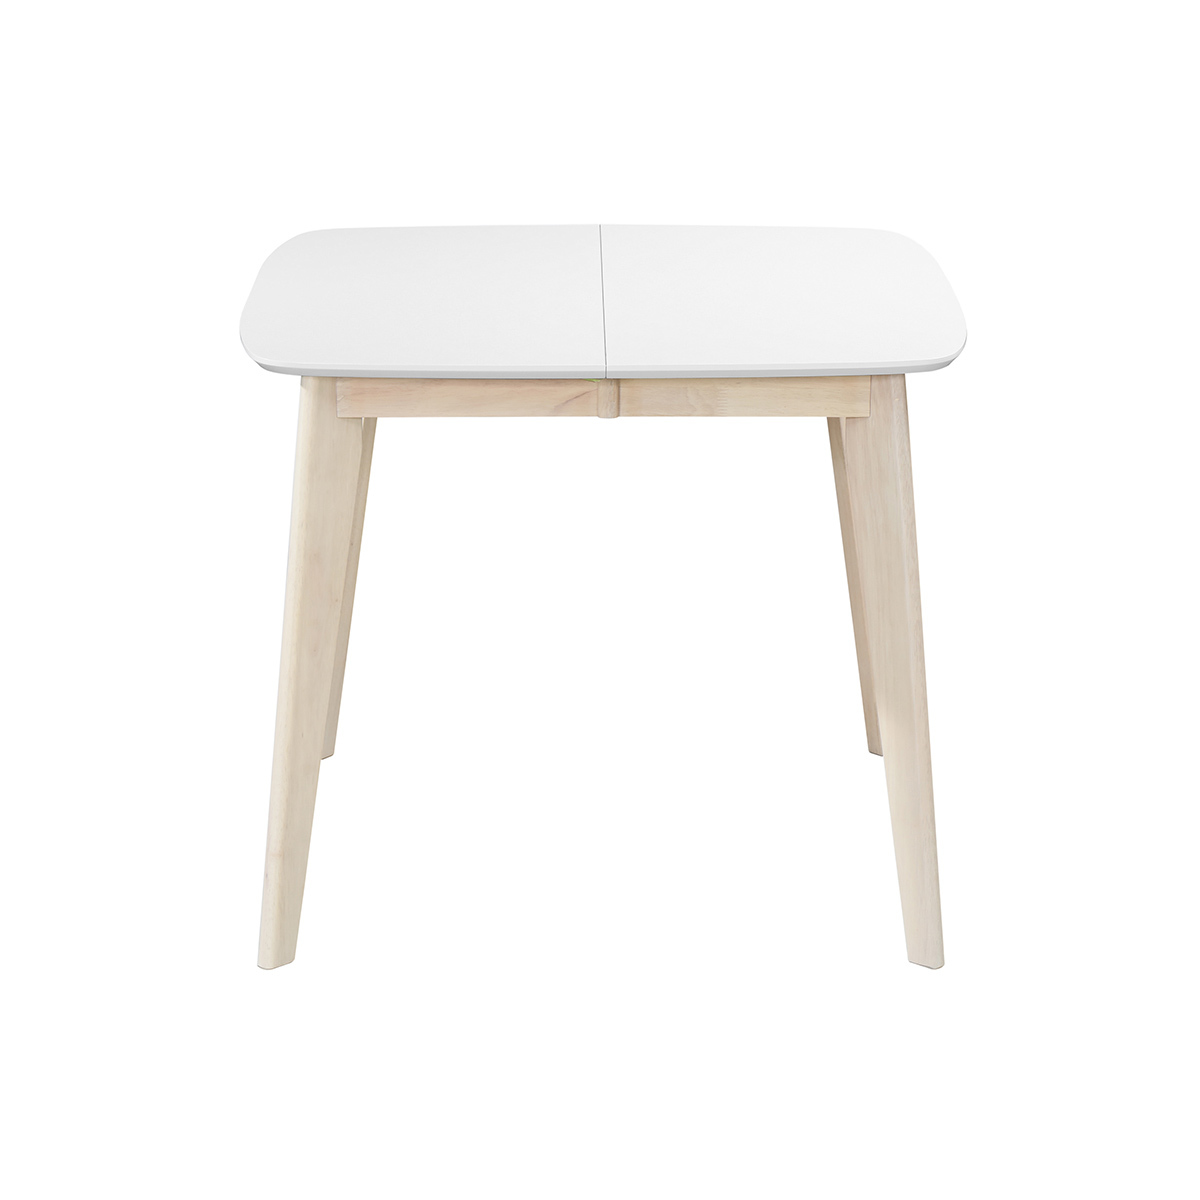 Table à manger extensible scandinave carrée blanche et bois L90-130 cm LEENA vue1